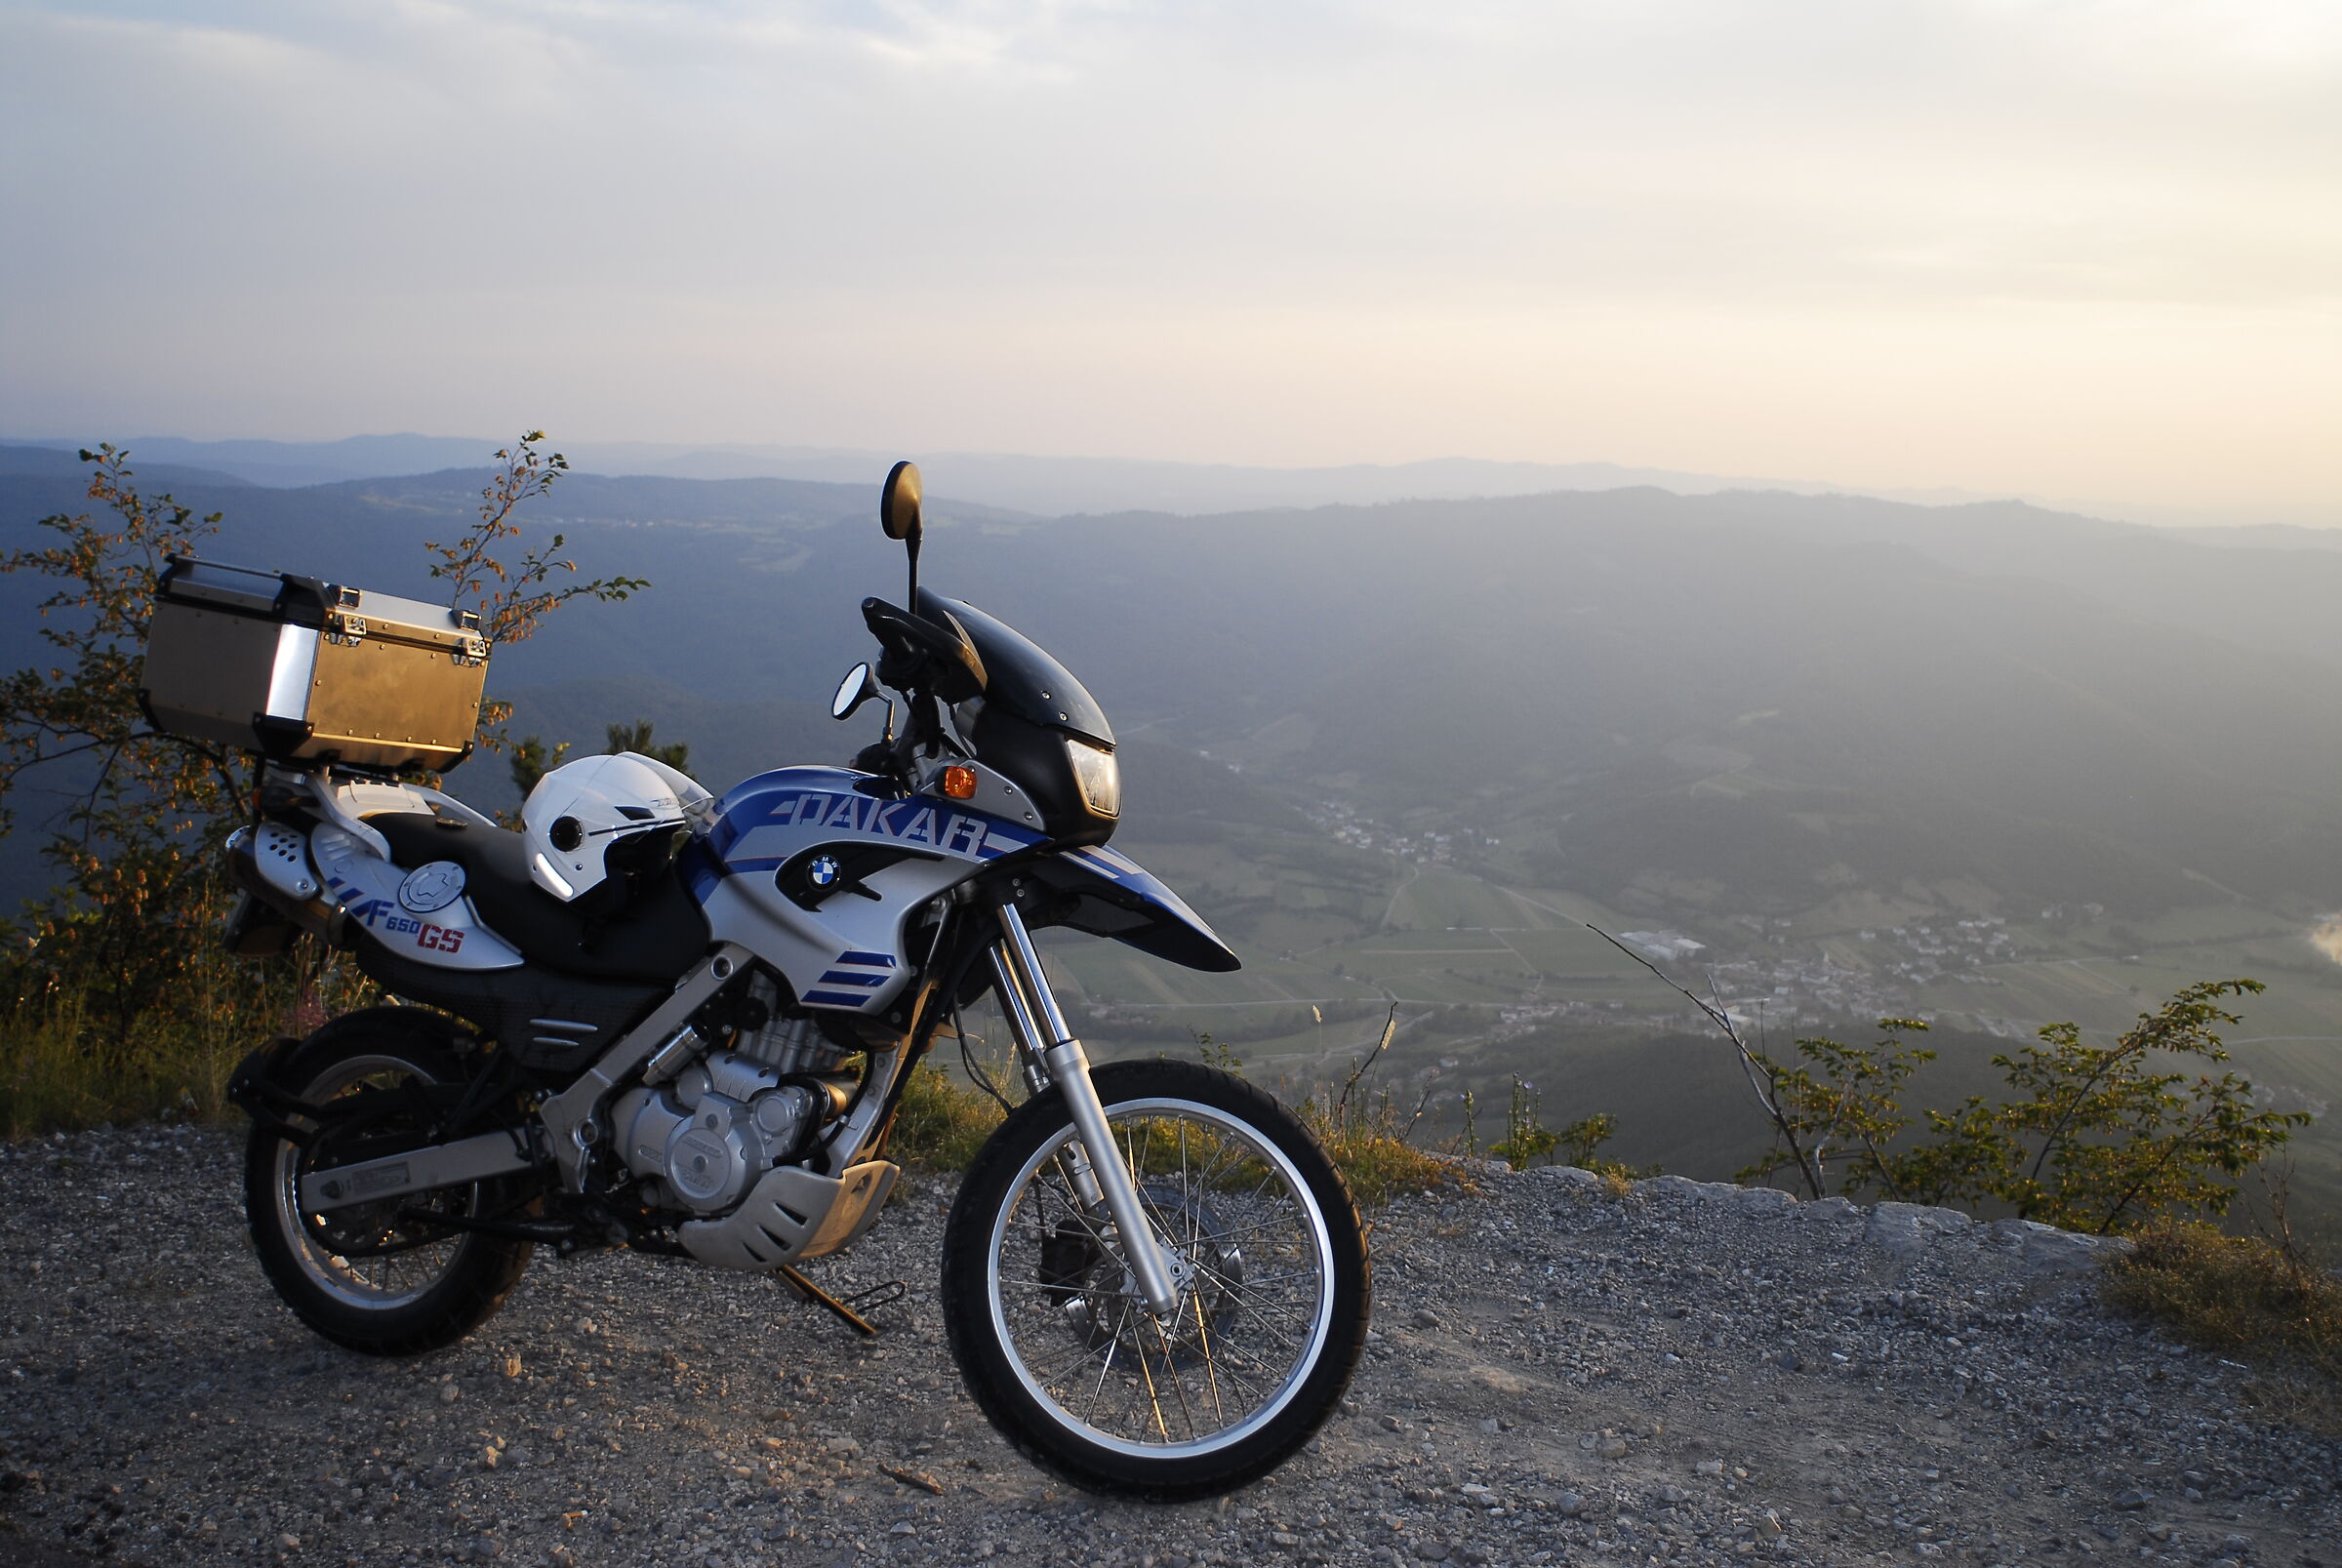 Gita in moto, paesaggio e foto ricordo...